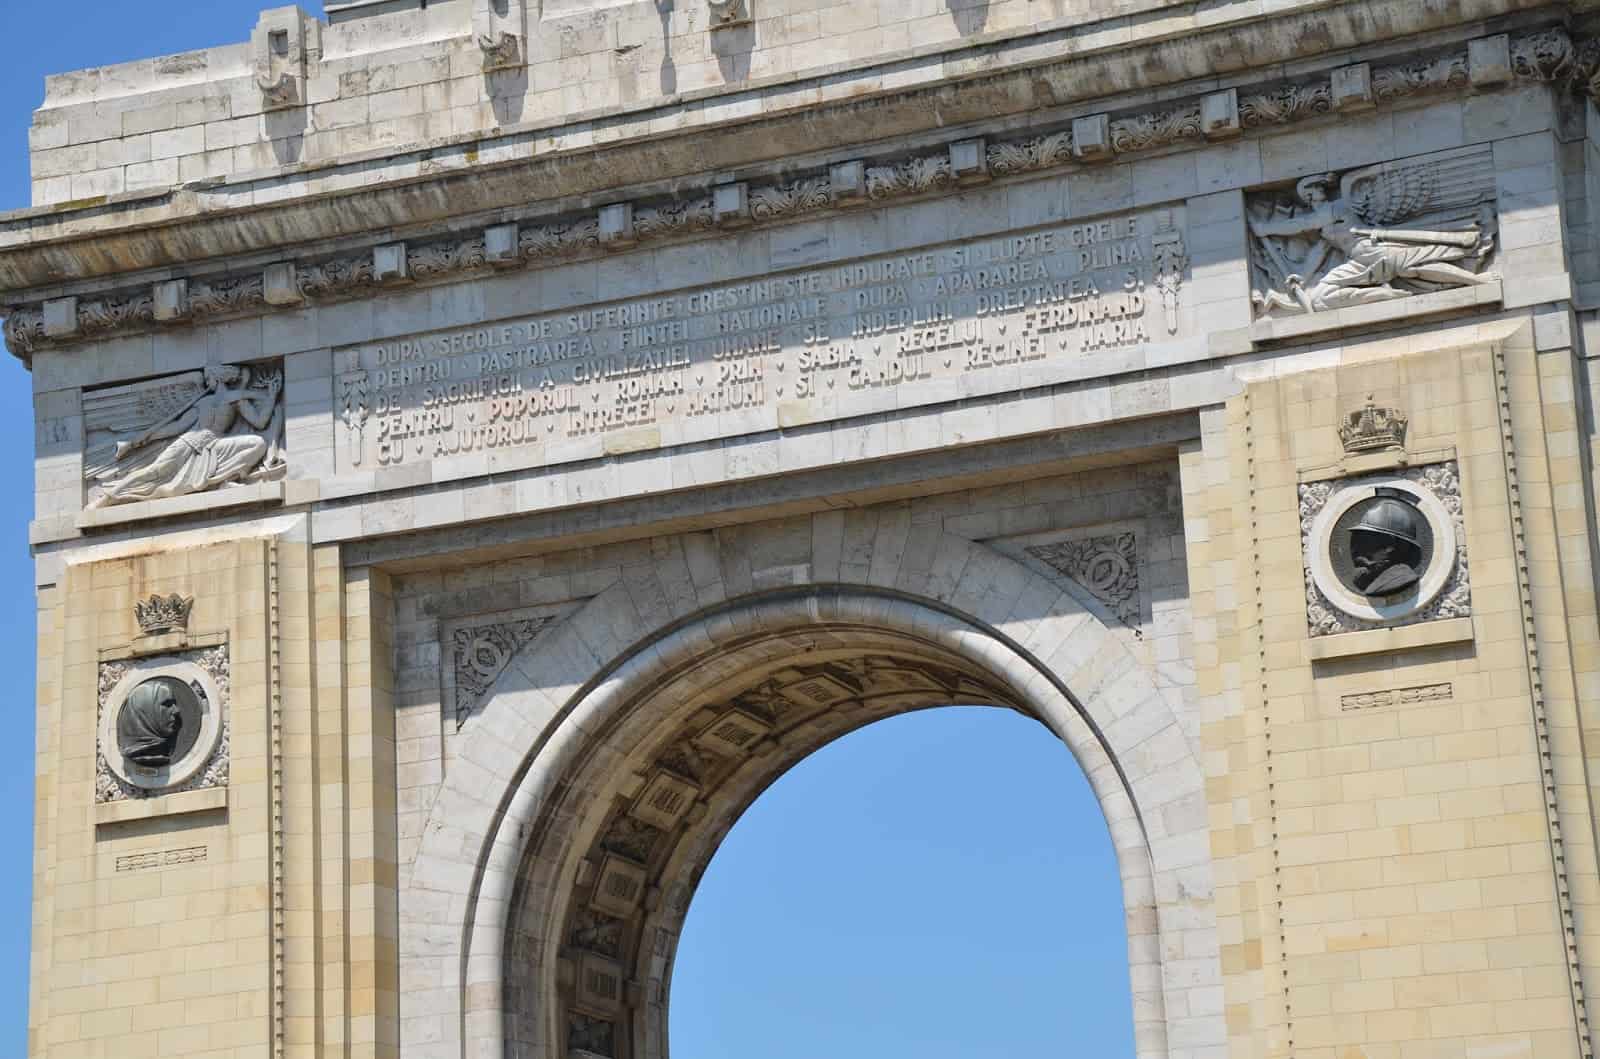 Arcul de Triumf in Bucharest, Romania